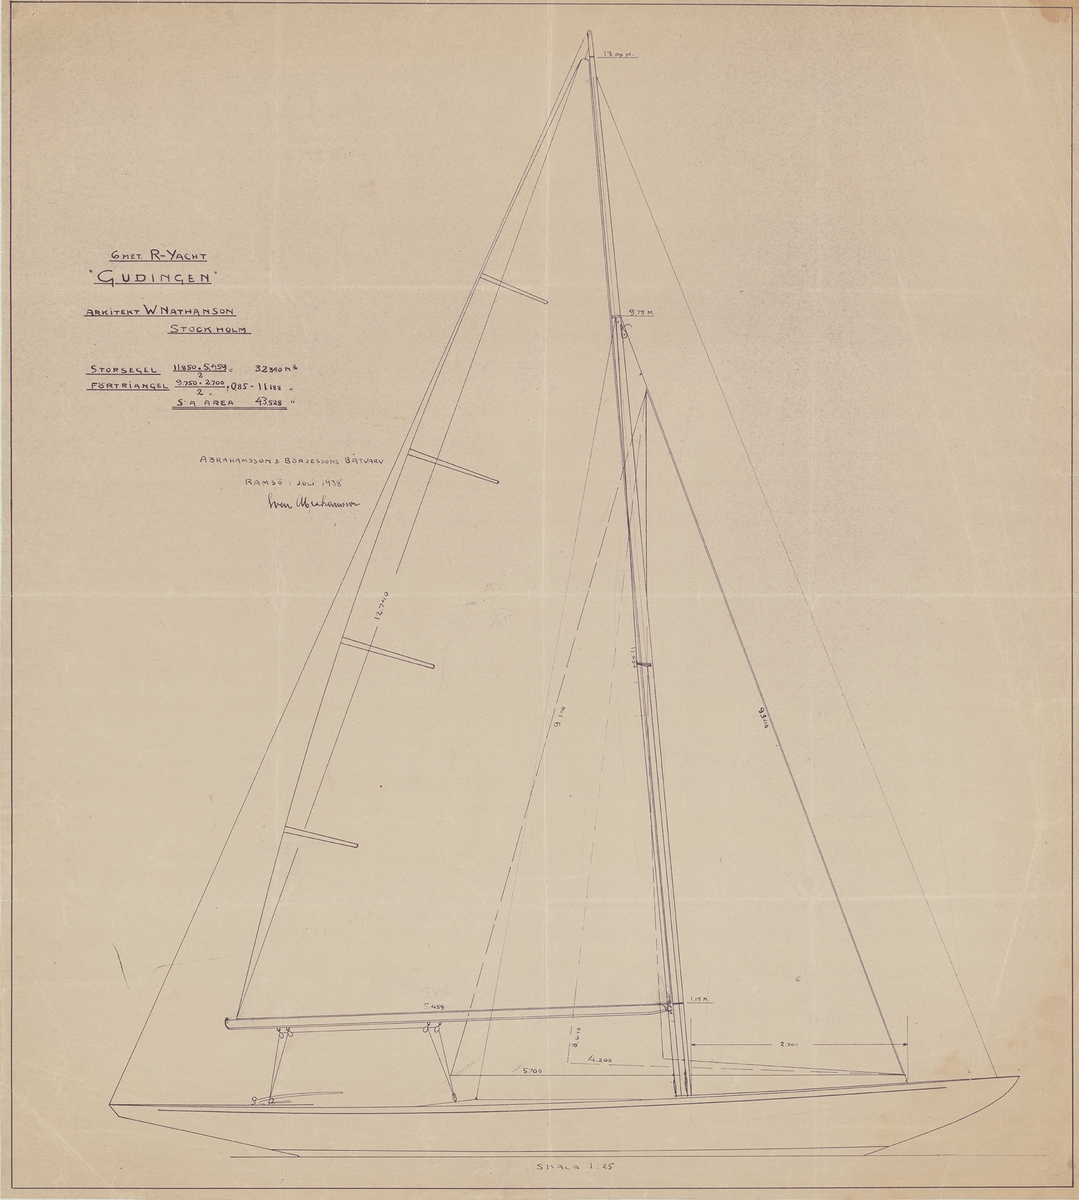 Segelritning till 6 meters r-jakten Gudingen ritad av Sven Abrahamsson för arkitekt W. Nathansson.